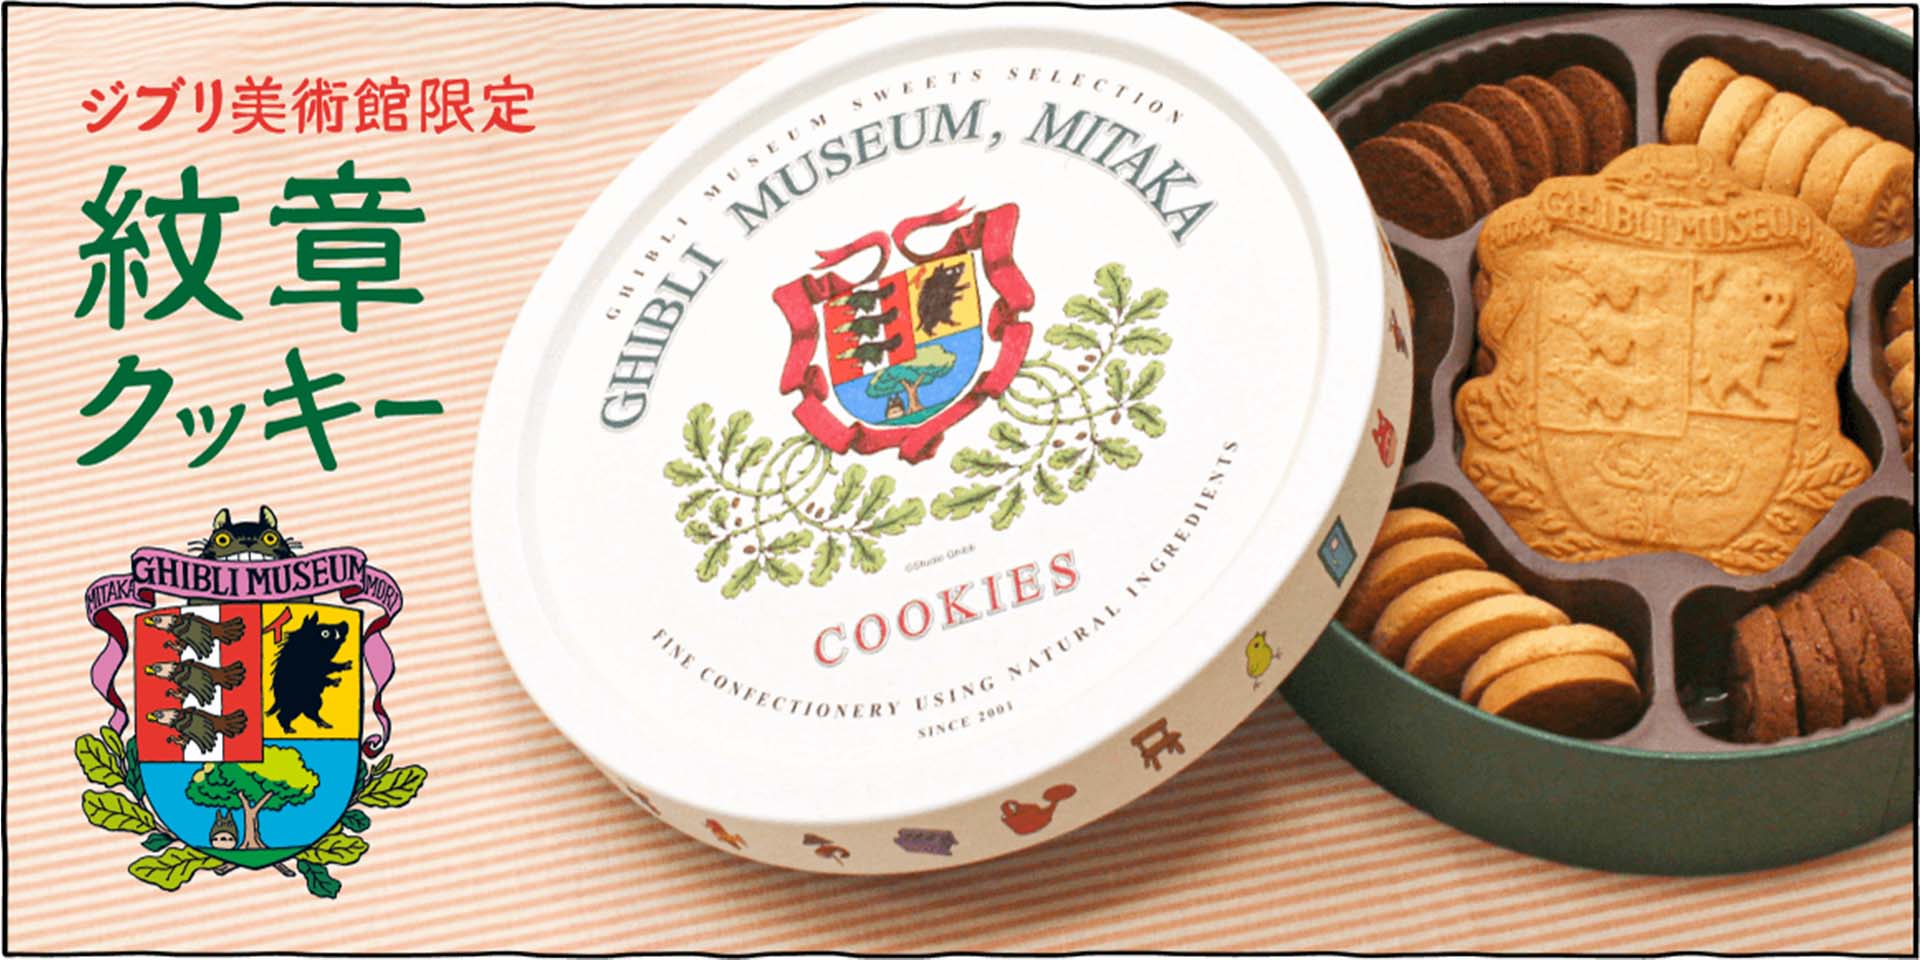 ジブリ美術館定番の人気商品、紋章クッキーです